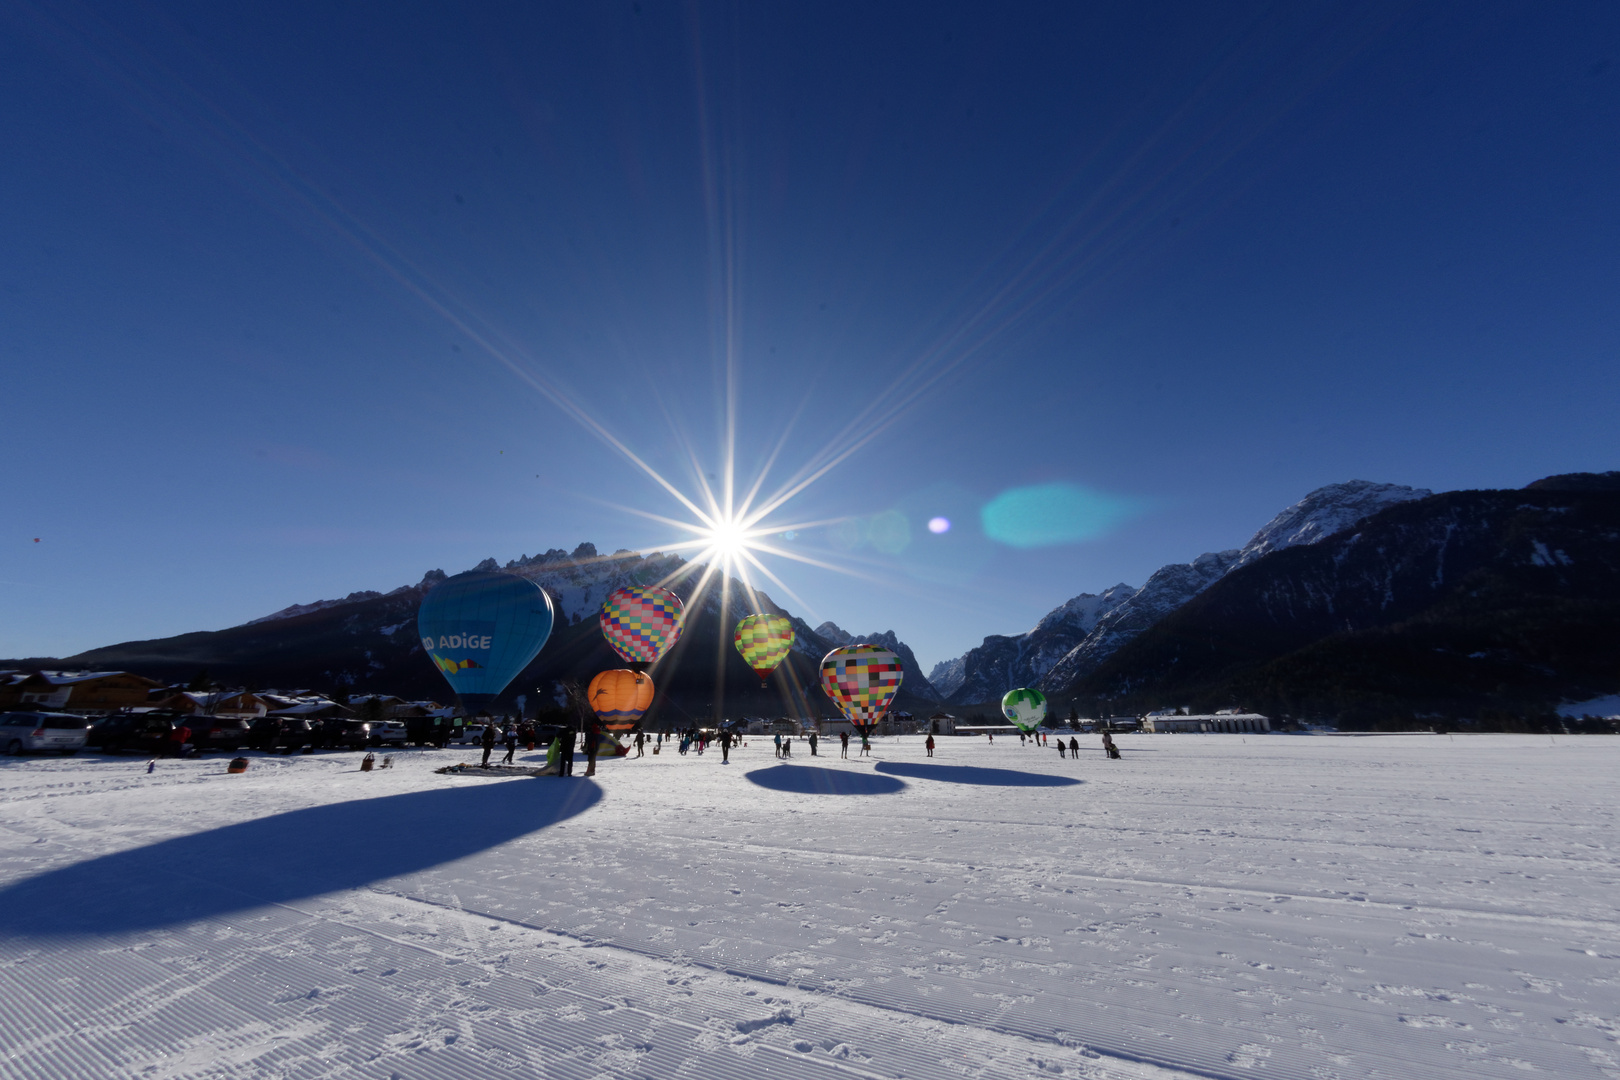 Dolomiti Balloonfestival - ein Highlight